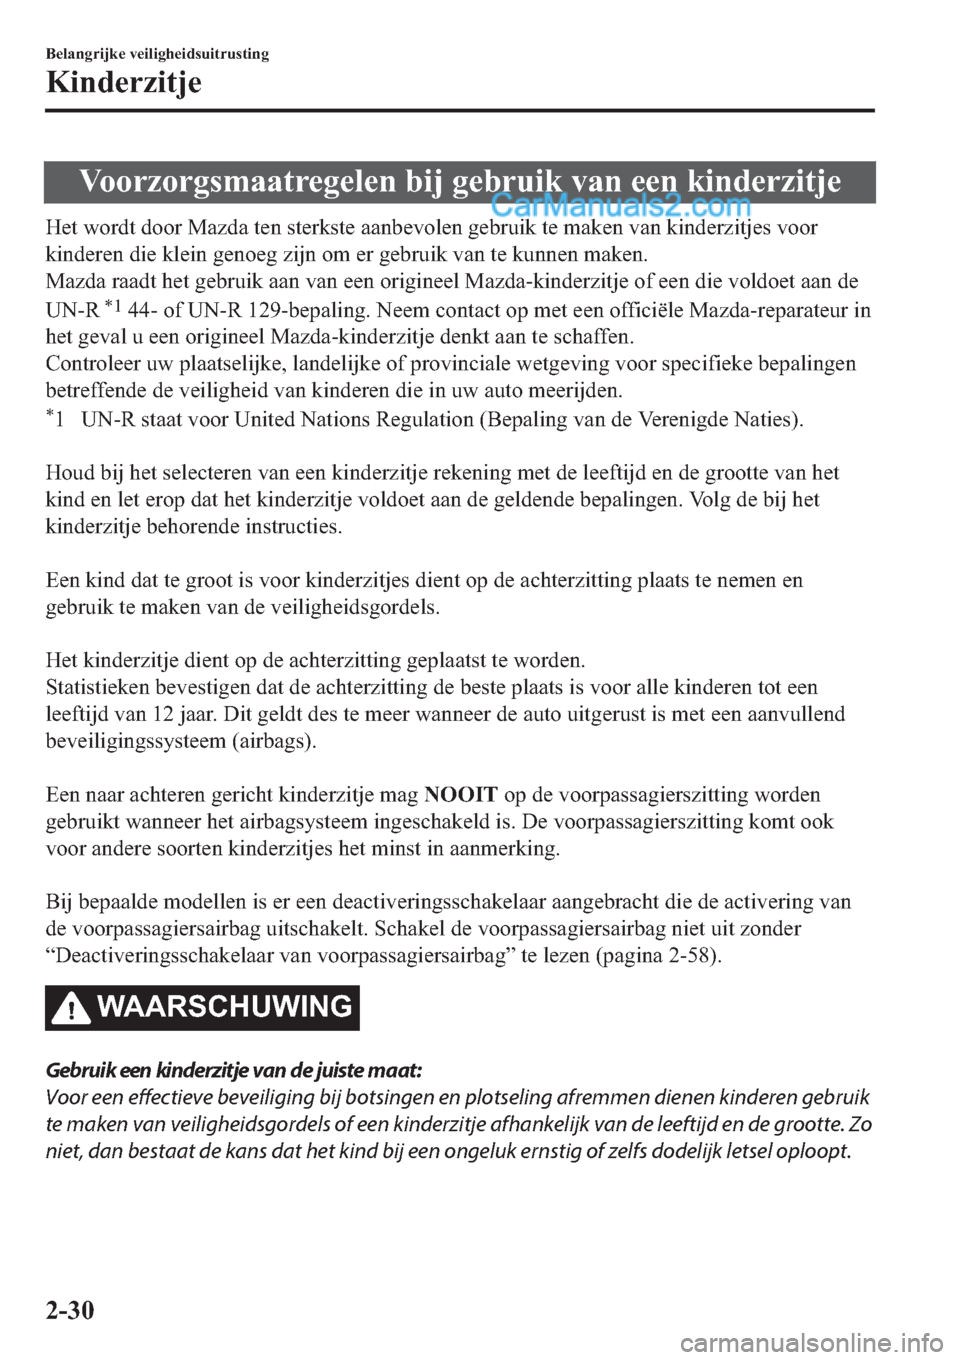 MAZDA MODEL 2 2019  Handleiding (in Dutch) �9�R�R�U�]�R�U�J�V�P�D�D�W�U�H�J�H�O�H�Q��E�L�M��J�H�E�U�X�L�N��Y�D�Q��H�H�Q��N�L�Q�G�H�U�]�L�W�M�H
�+�H�W��Z�R�U�G�W��G�R�R�U��0�D�]�G�D��W�H�Q��V�W�H�U�N�V�W�H��D�D�Q�E�H�Y�R�O�H�Q��J�H�